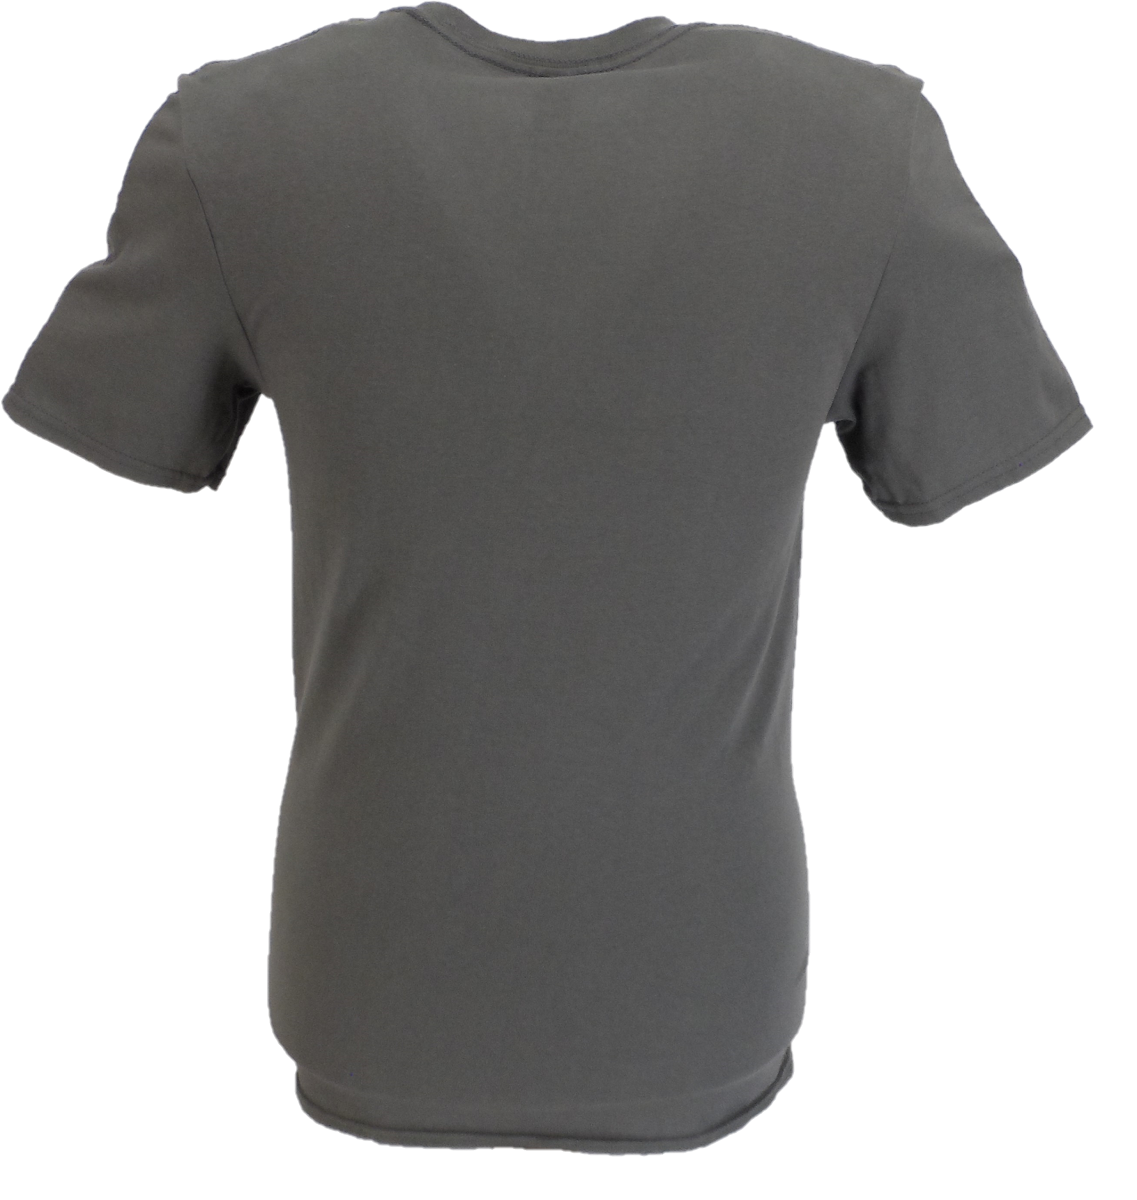 Camisetas retro con logo de gatos callejeros grises Officially Licensed para hombre